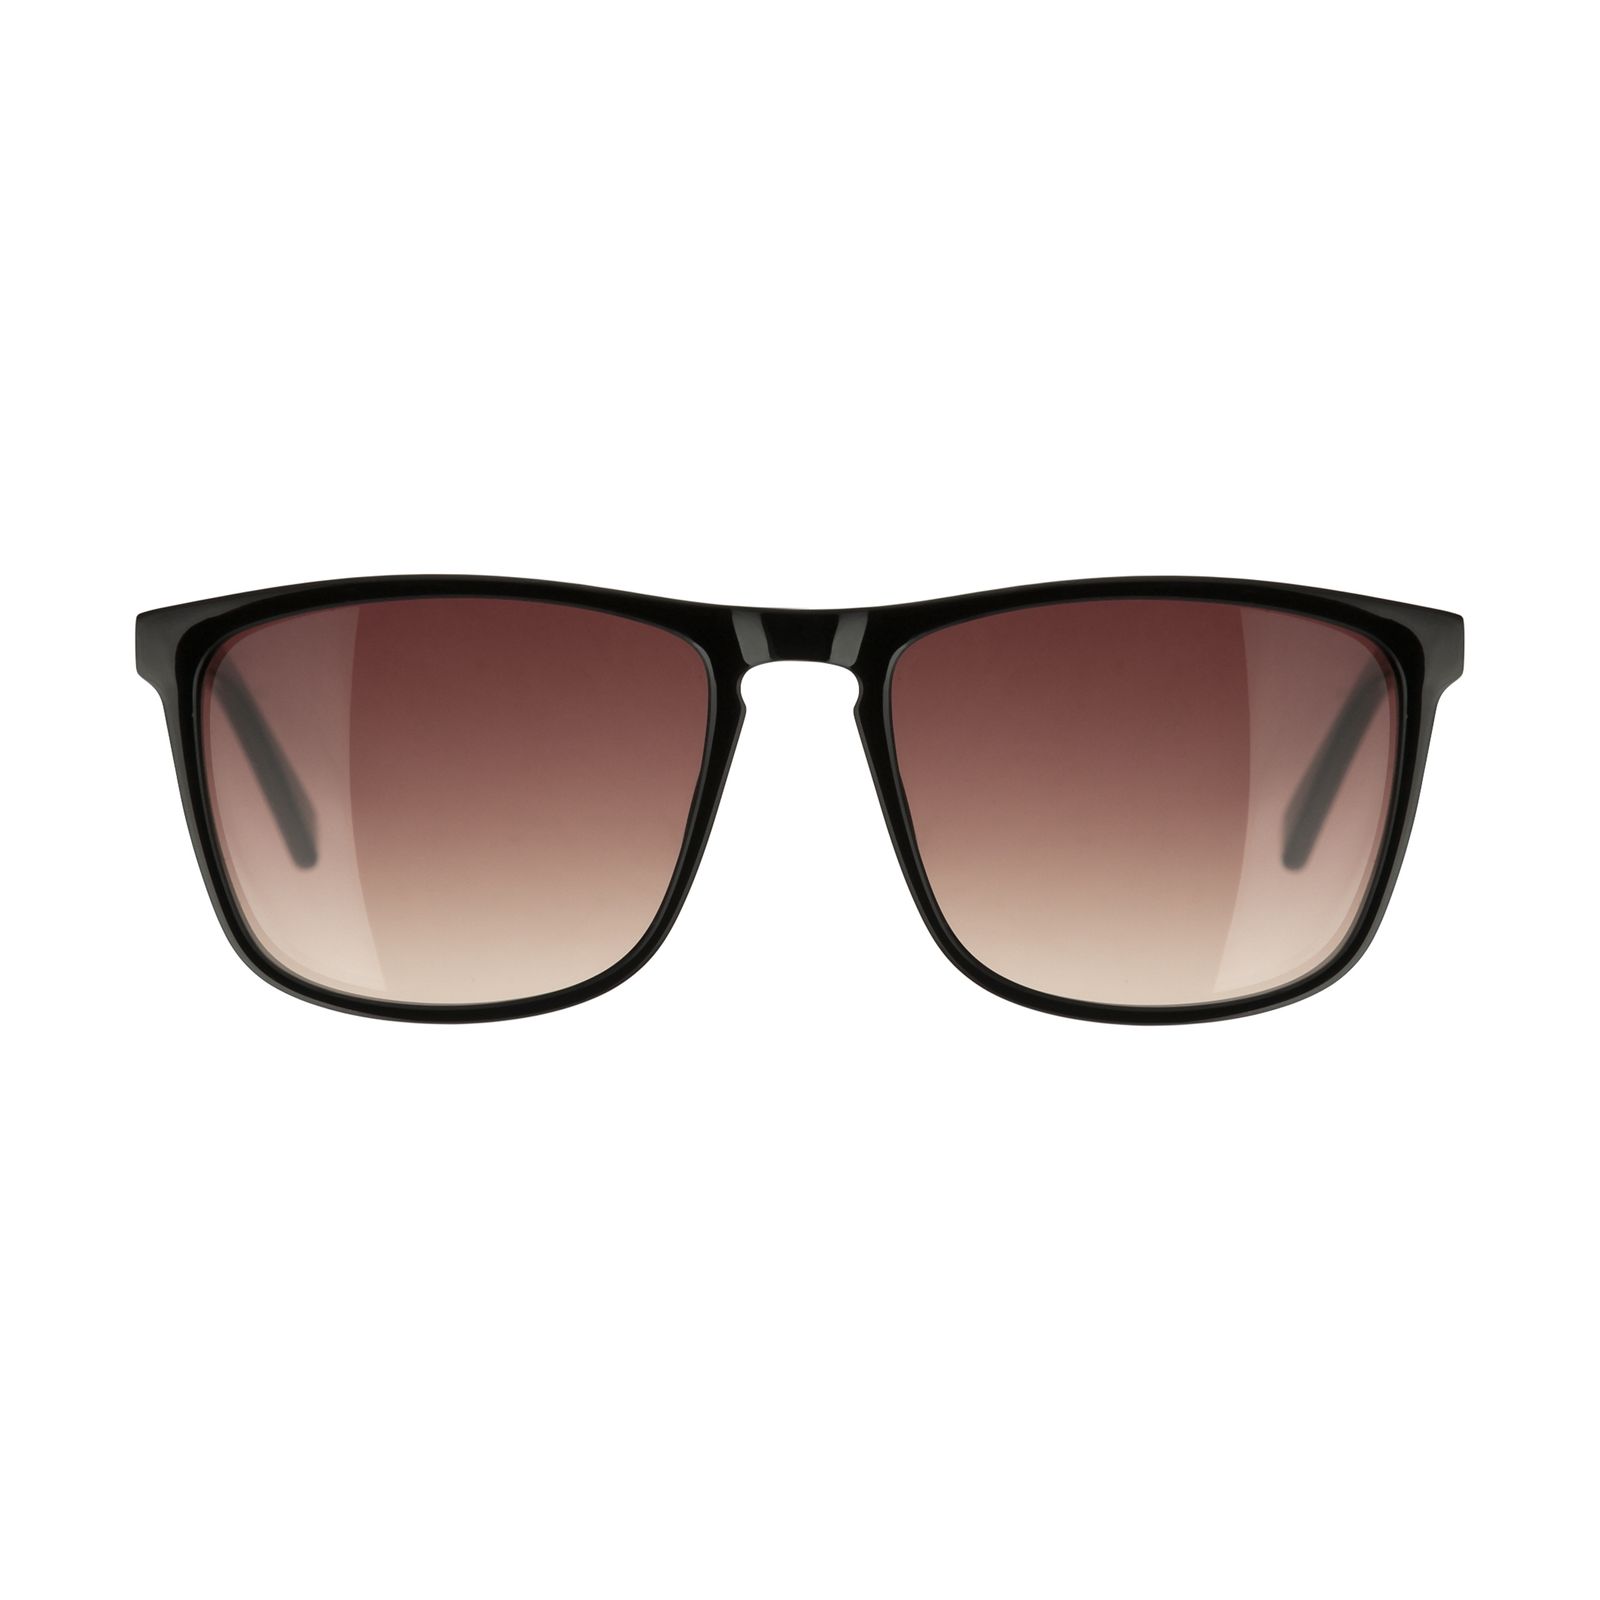 عینک آفتابی مردانه تد بیکر مدل TB 1535 OO1 -  - 1